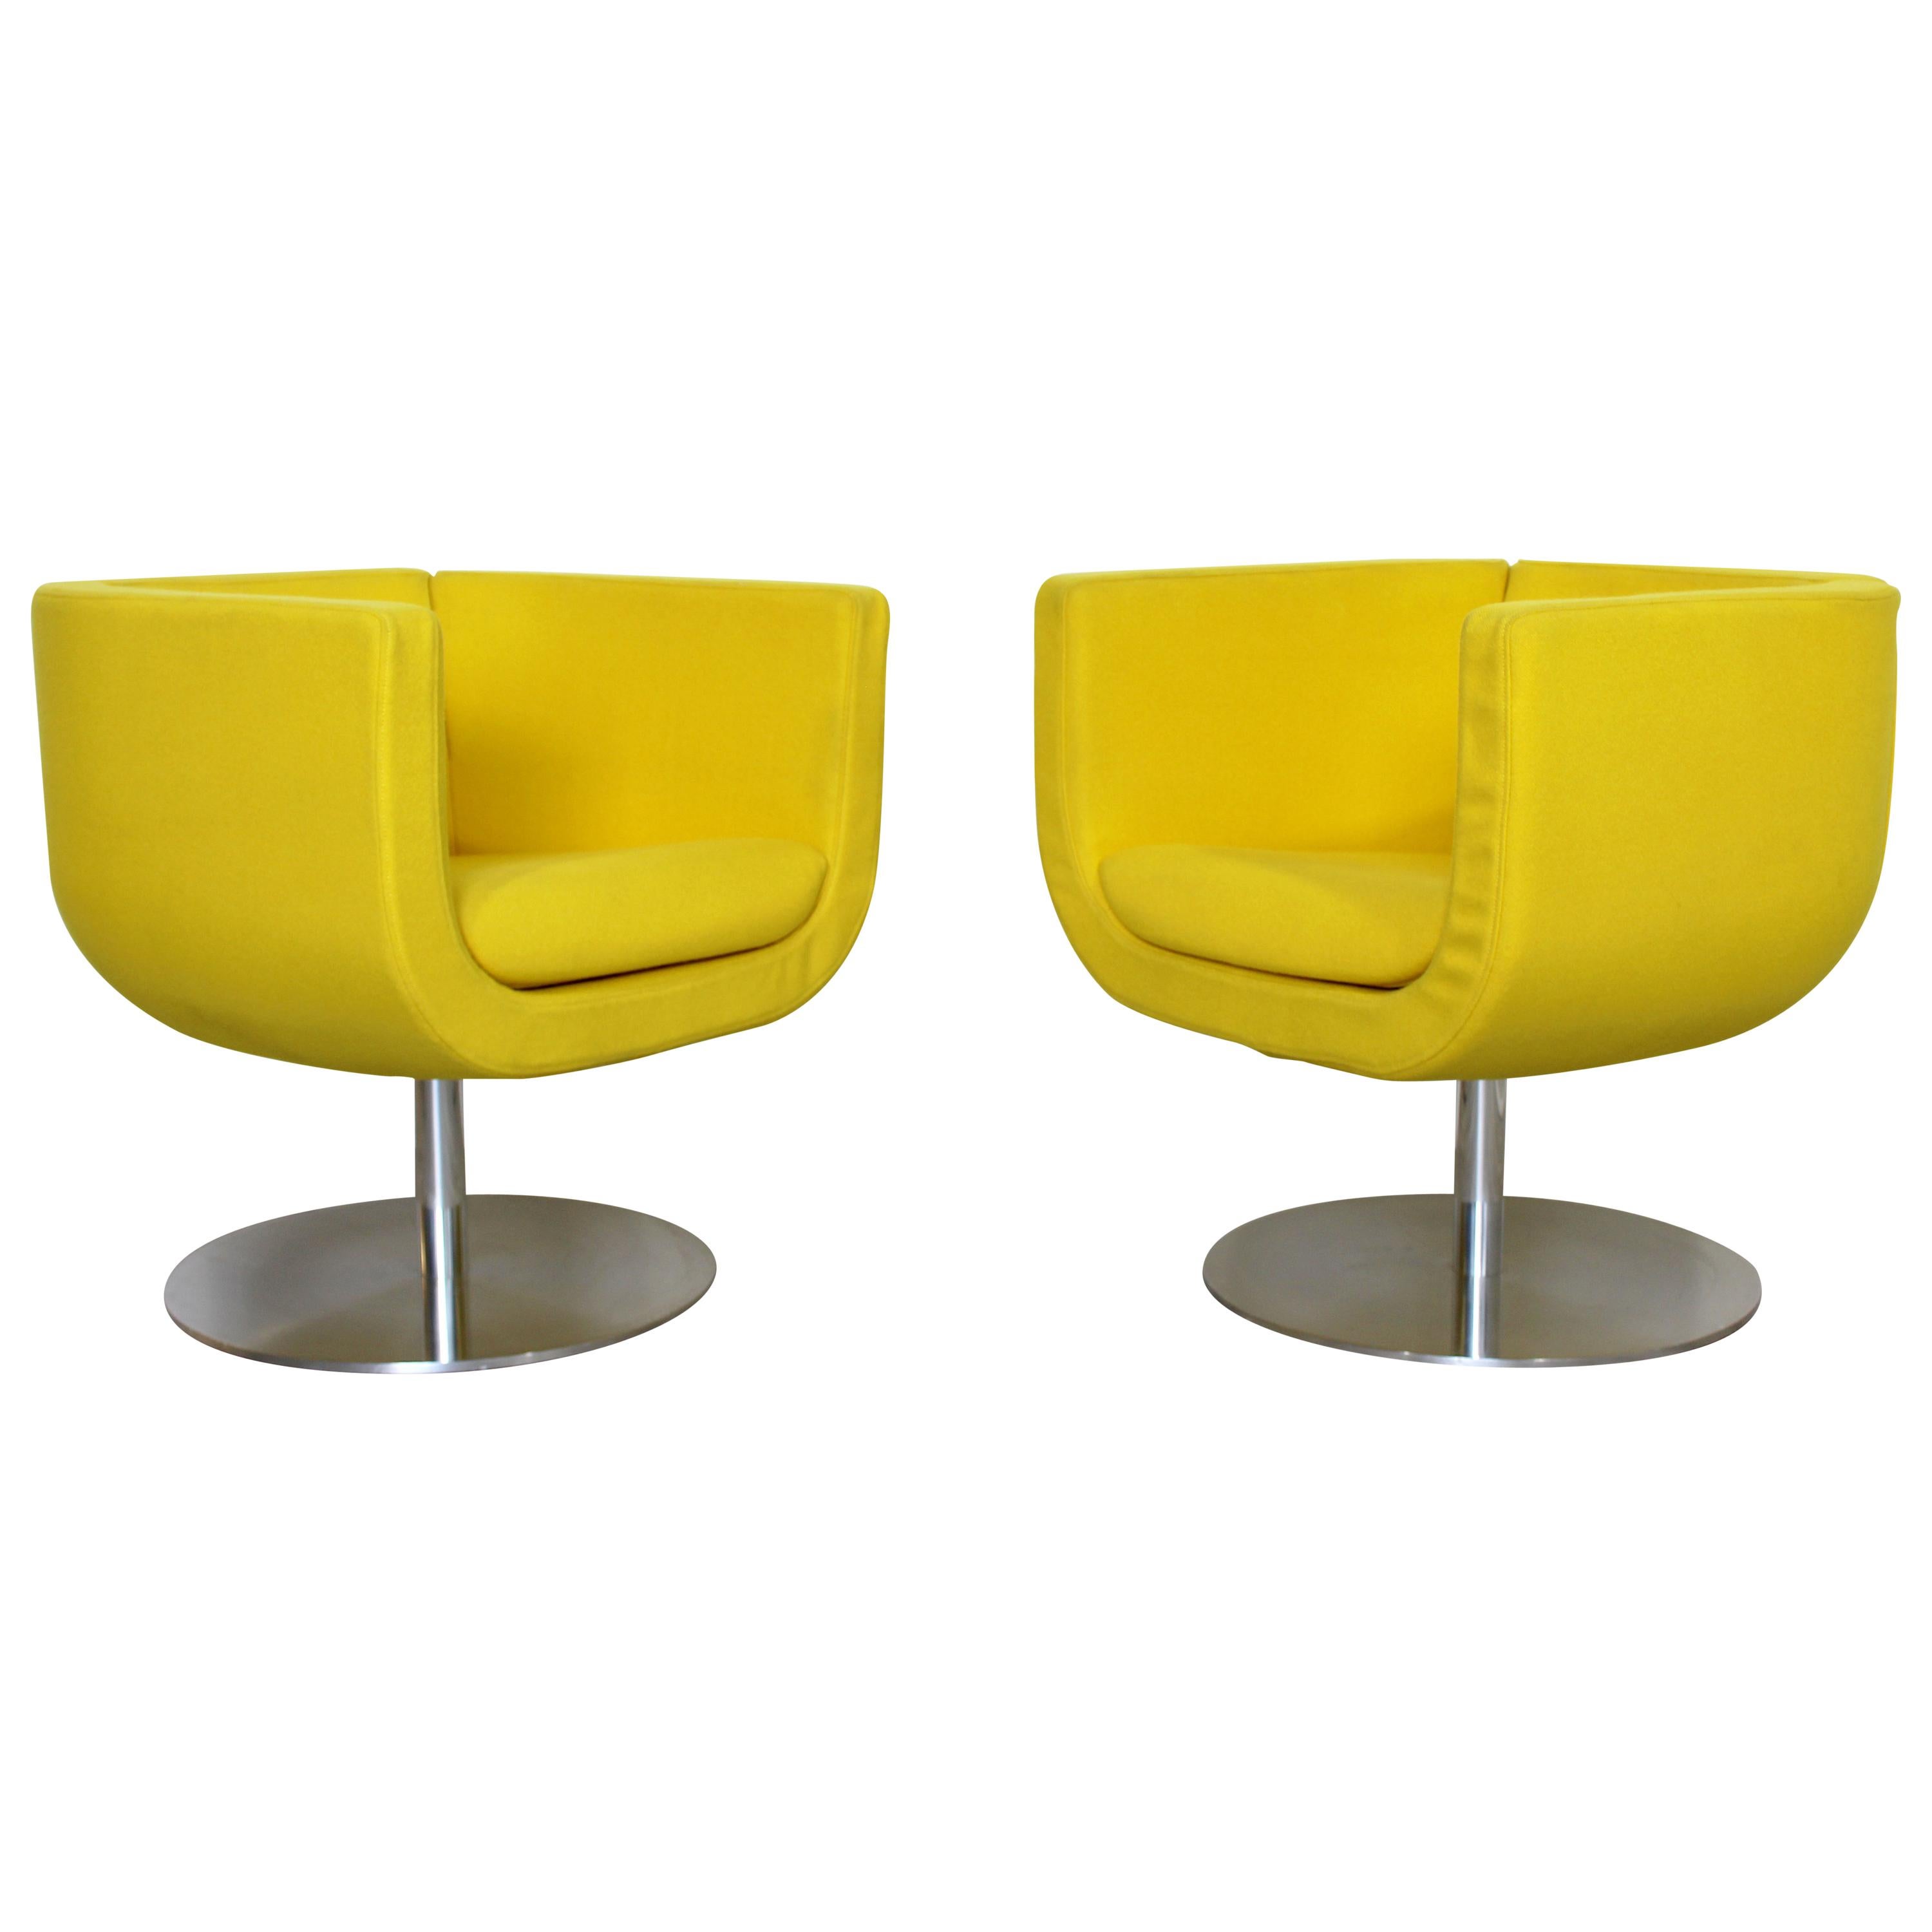 Contemporary Modern Pair of Yellow Tulip Chrome Swivel Chairs B&B Italia